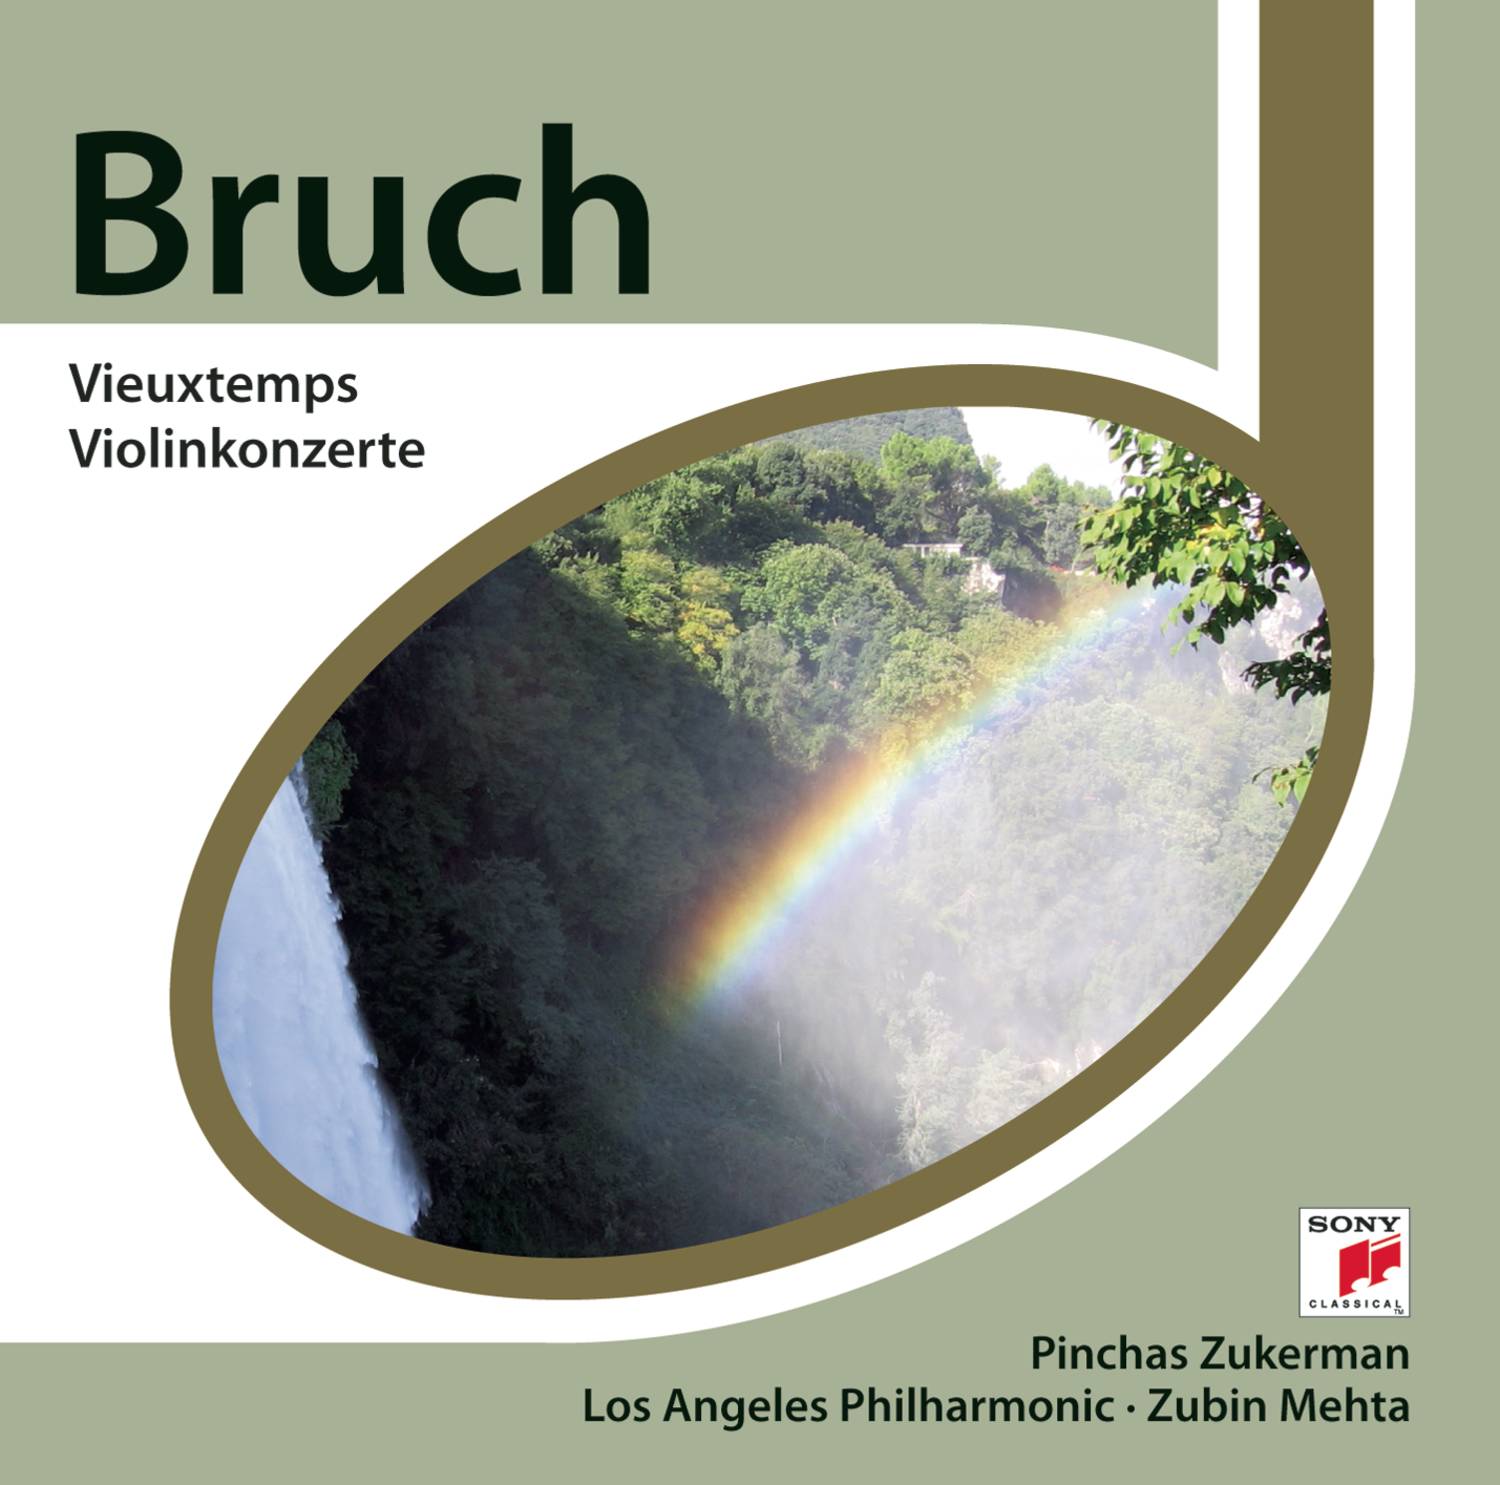 Bruch: Vieuxtemps Violinkonzerte